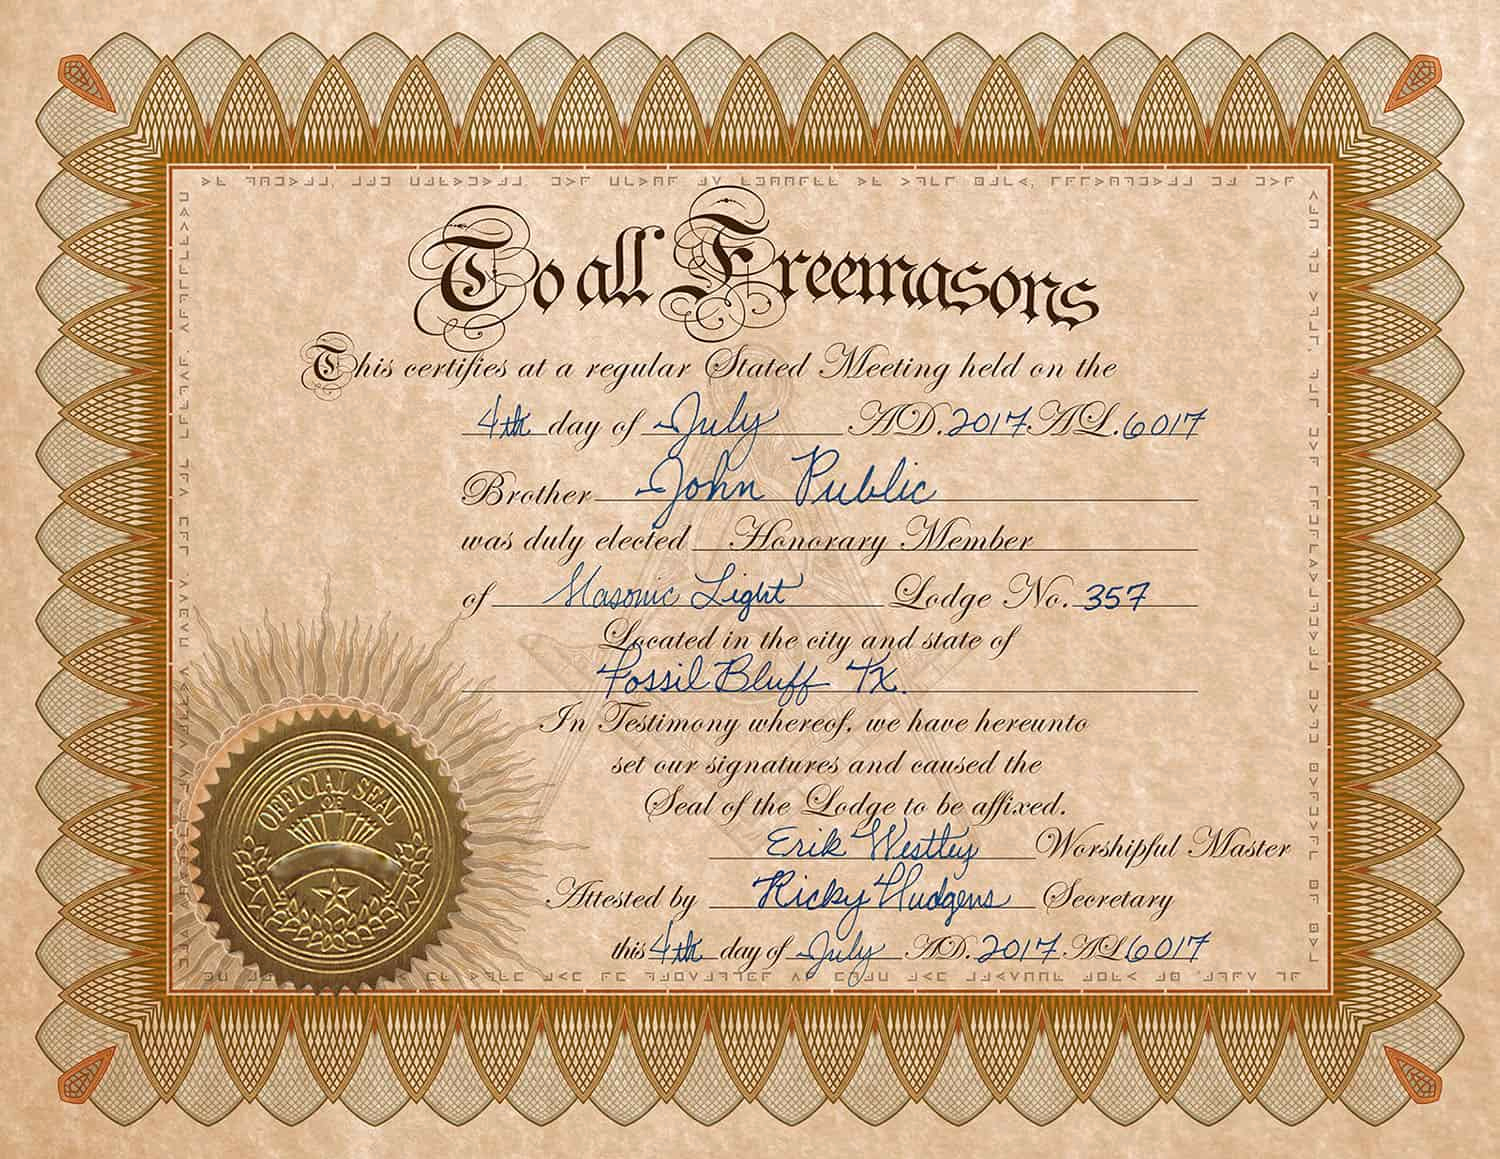 Honorary Member Certificate Template New Certificate Honorary Membership